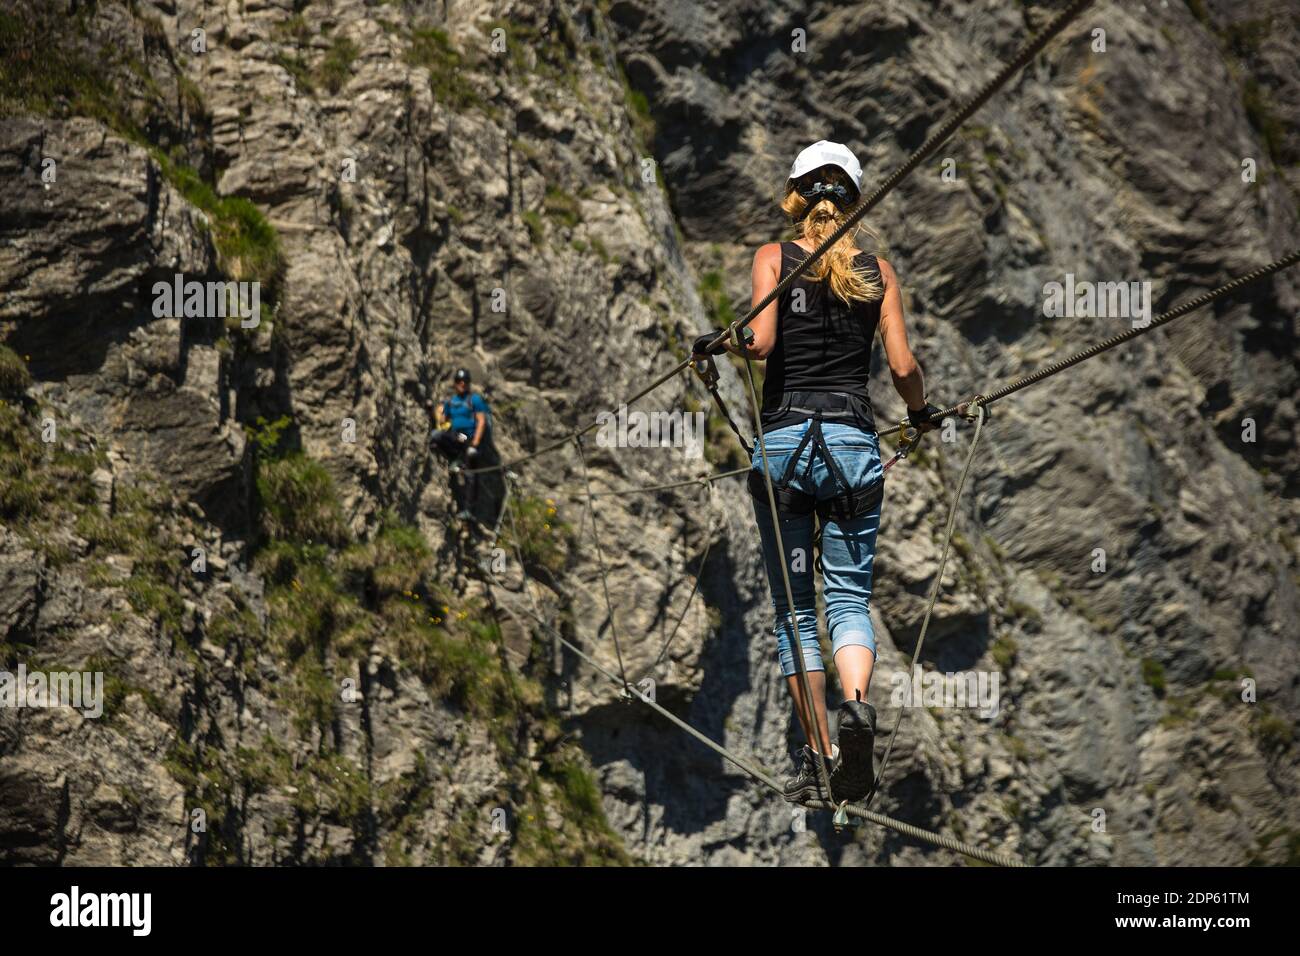 Kandersteg - tolles Urlaubsziel in den Schweizer Alpen, Schweiz. Pärchen  auf einem schönen Klettersteig Stockfotografie - Alamy